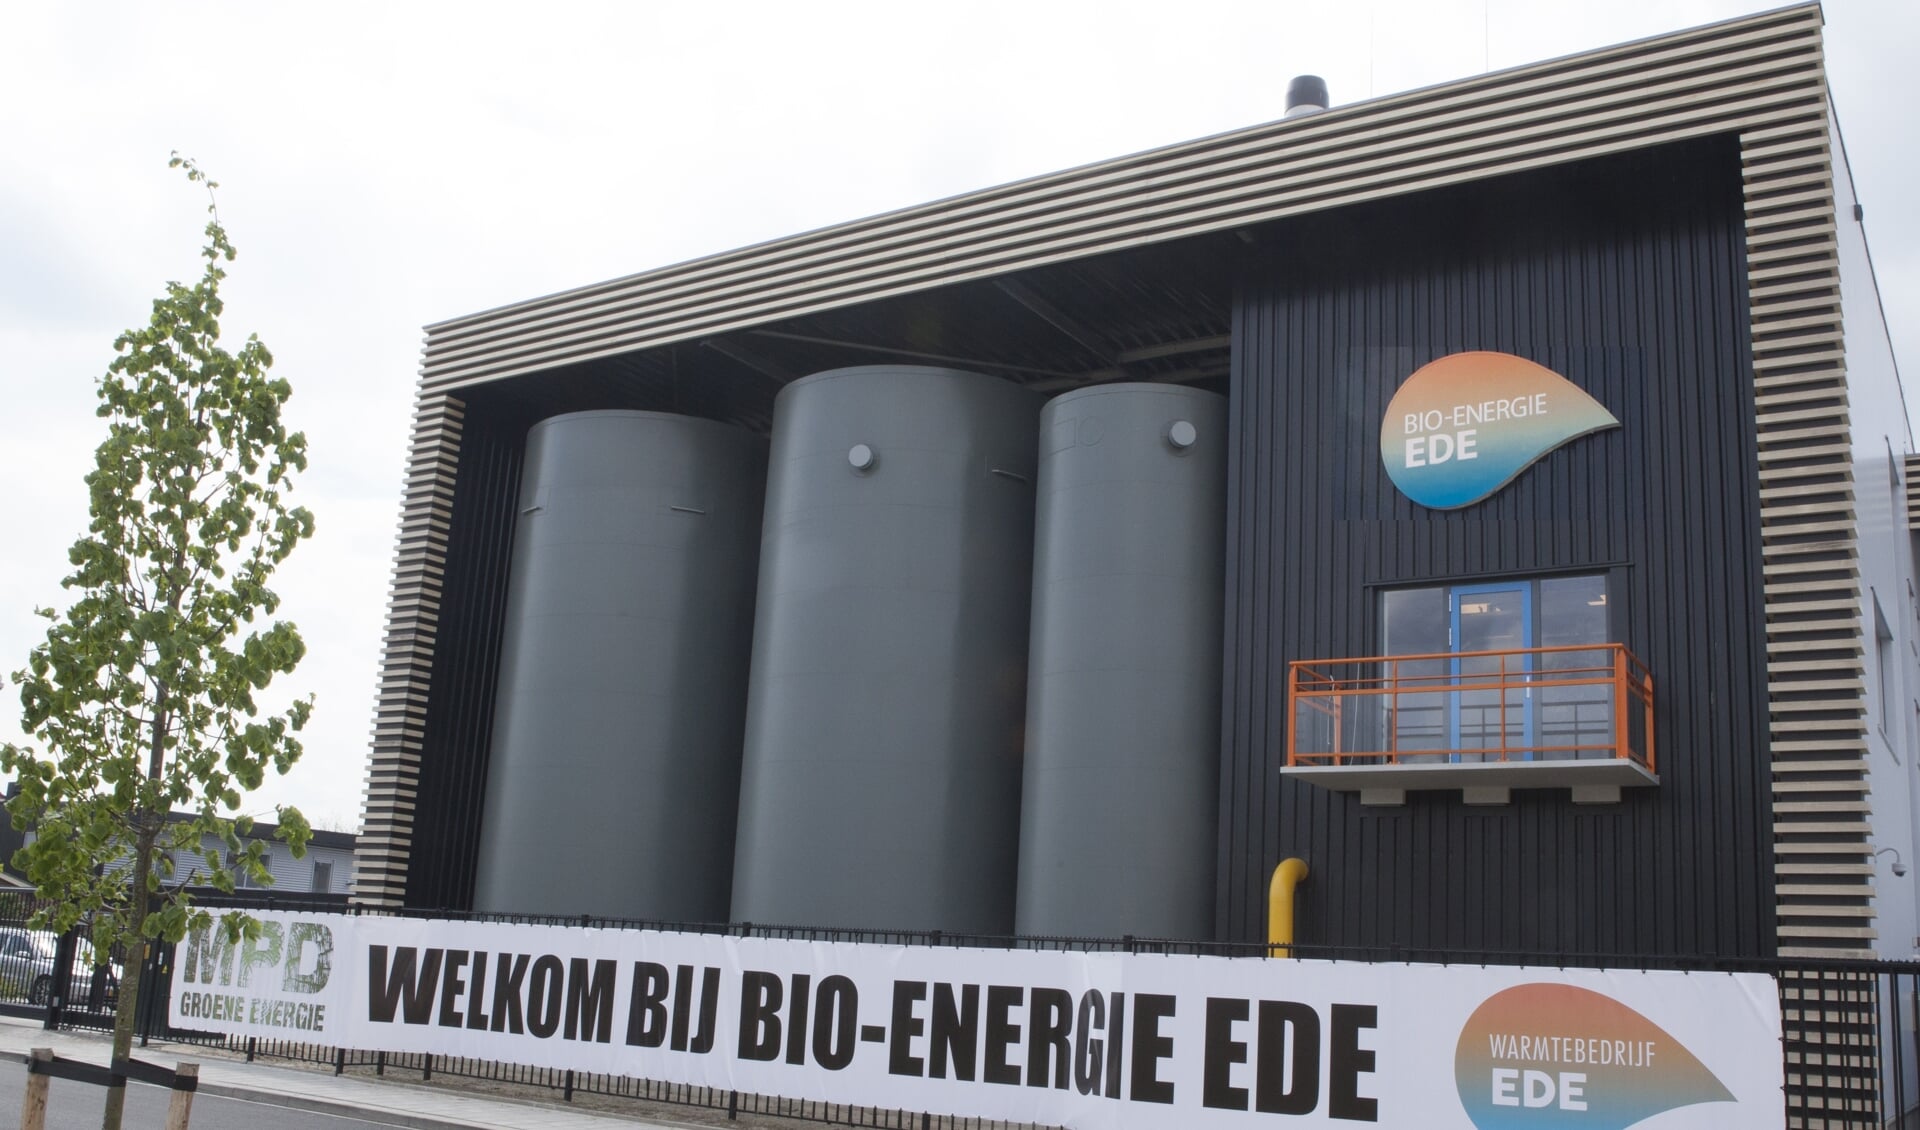 Warmtebedrijf Ede, Bewoners uit Kernhem welkom bij warmtebedrijf Ede